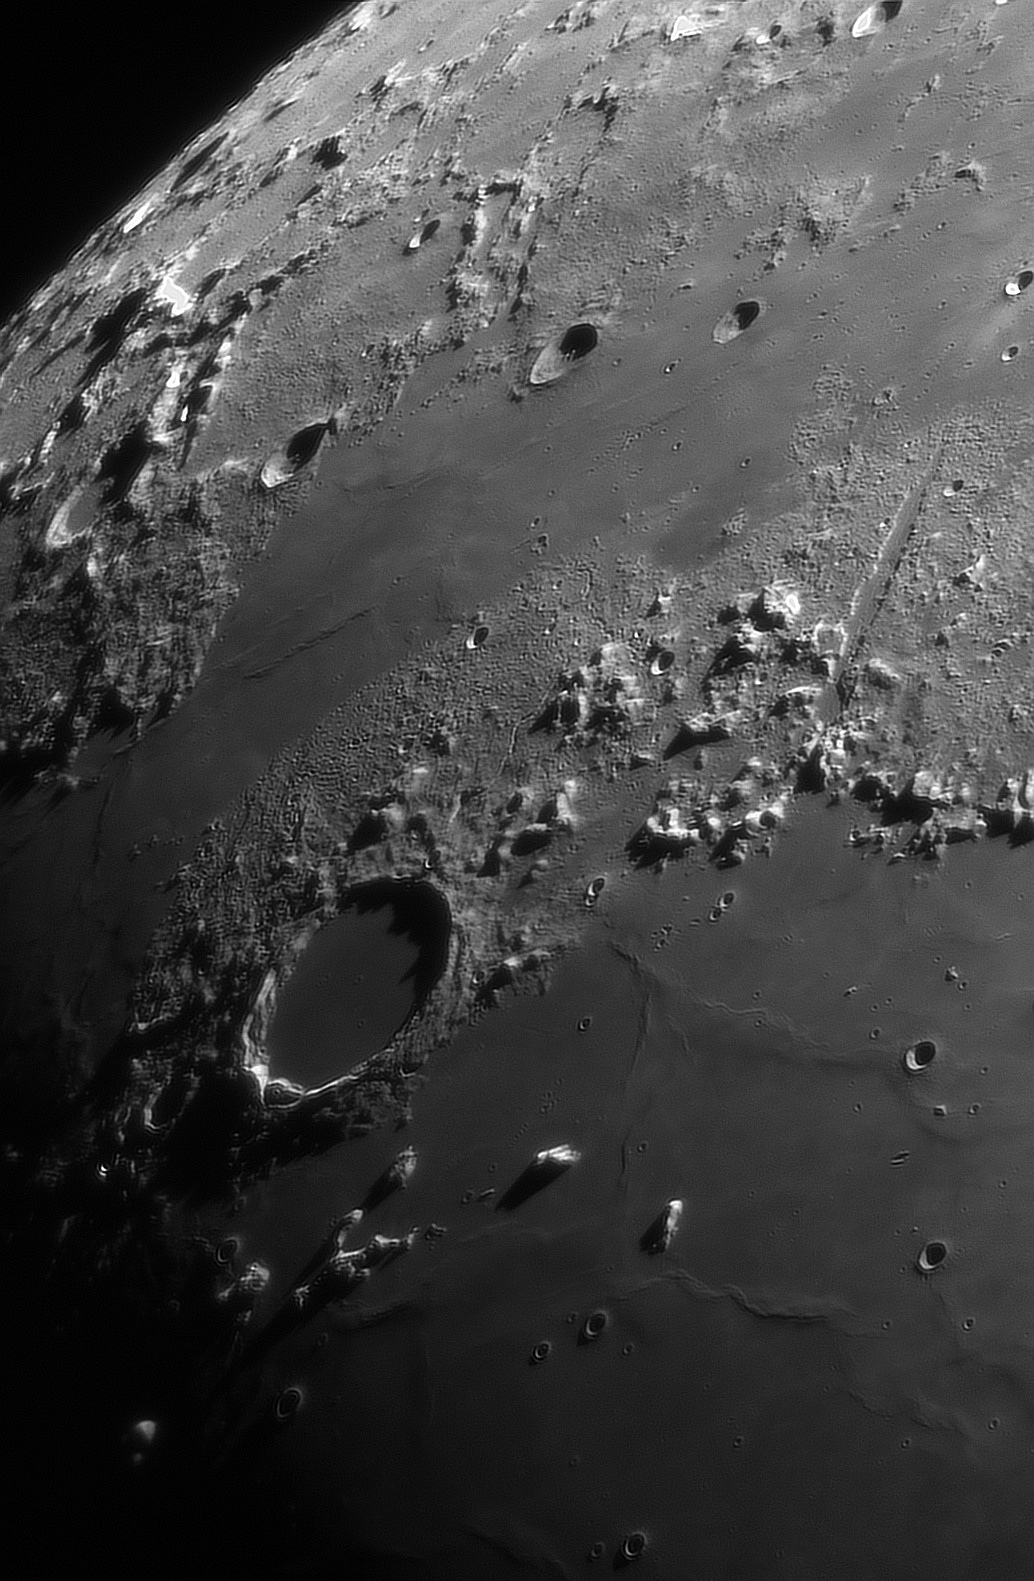 La Lune De Ces Derniers Jours Au C11 Astrophotographie Astrosurf